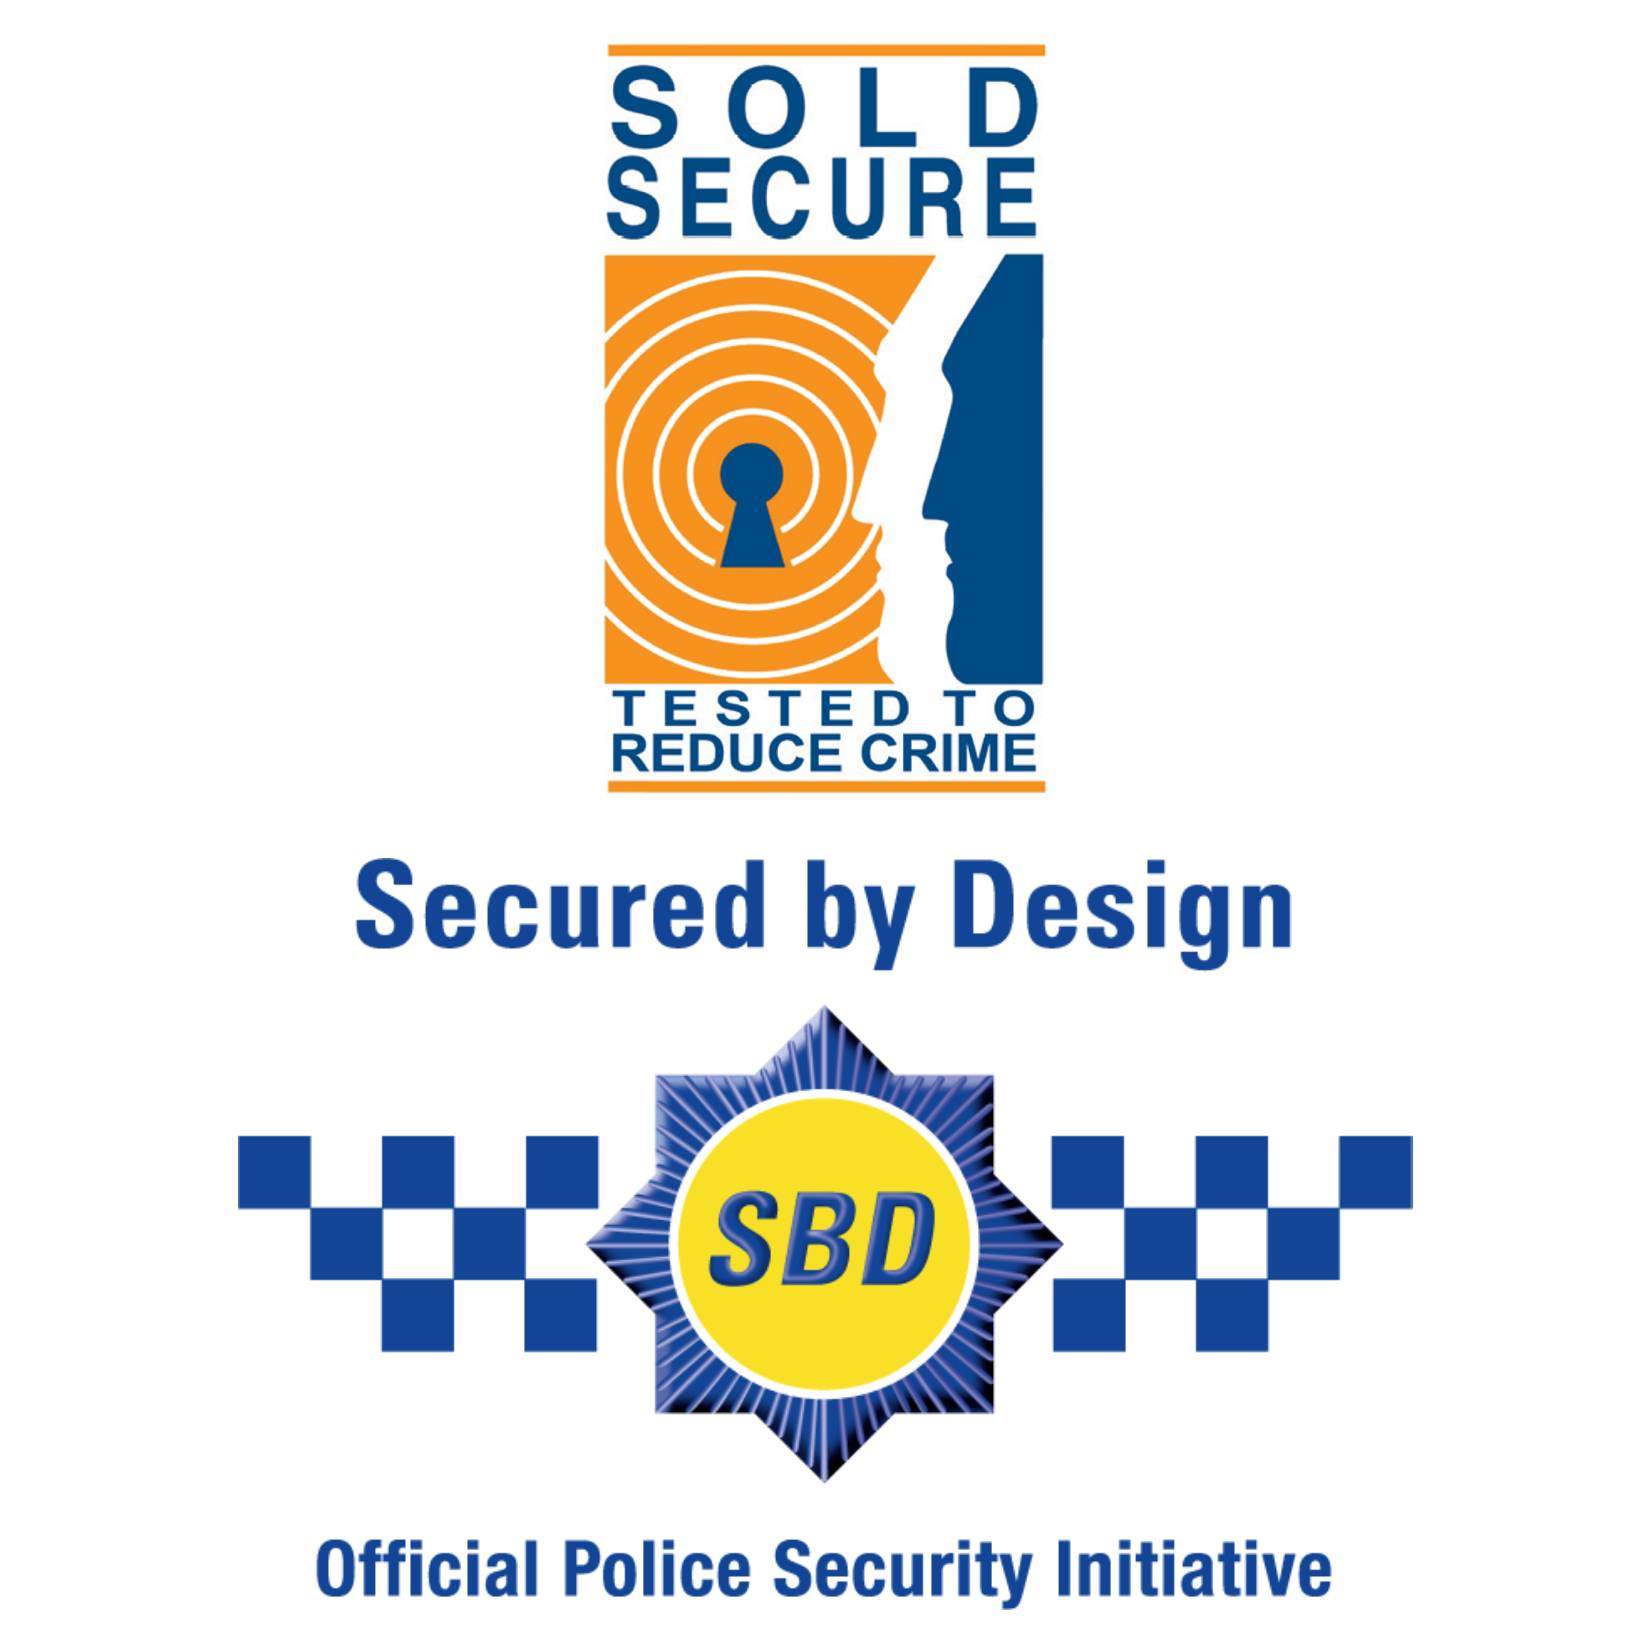 Certyfikaty bezpieczeństwa Secured by Design oraz Sold Secure